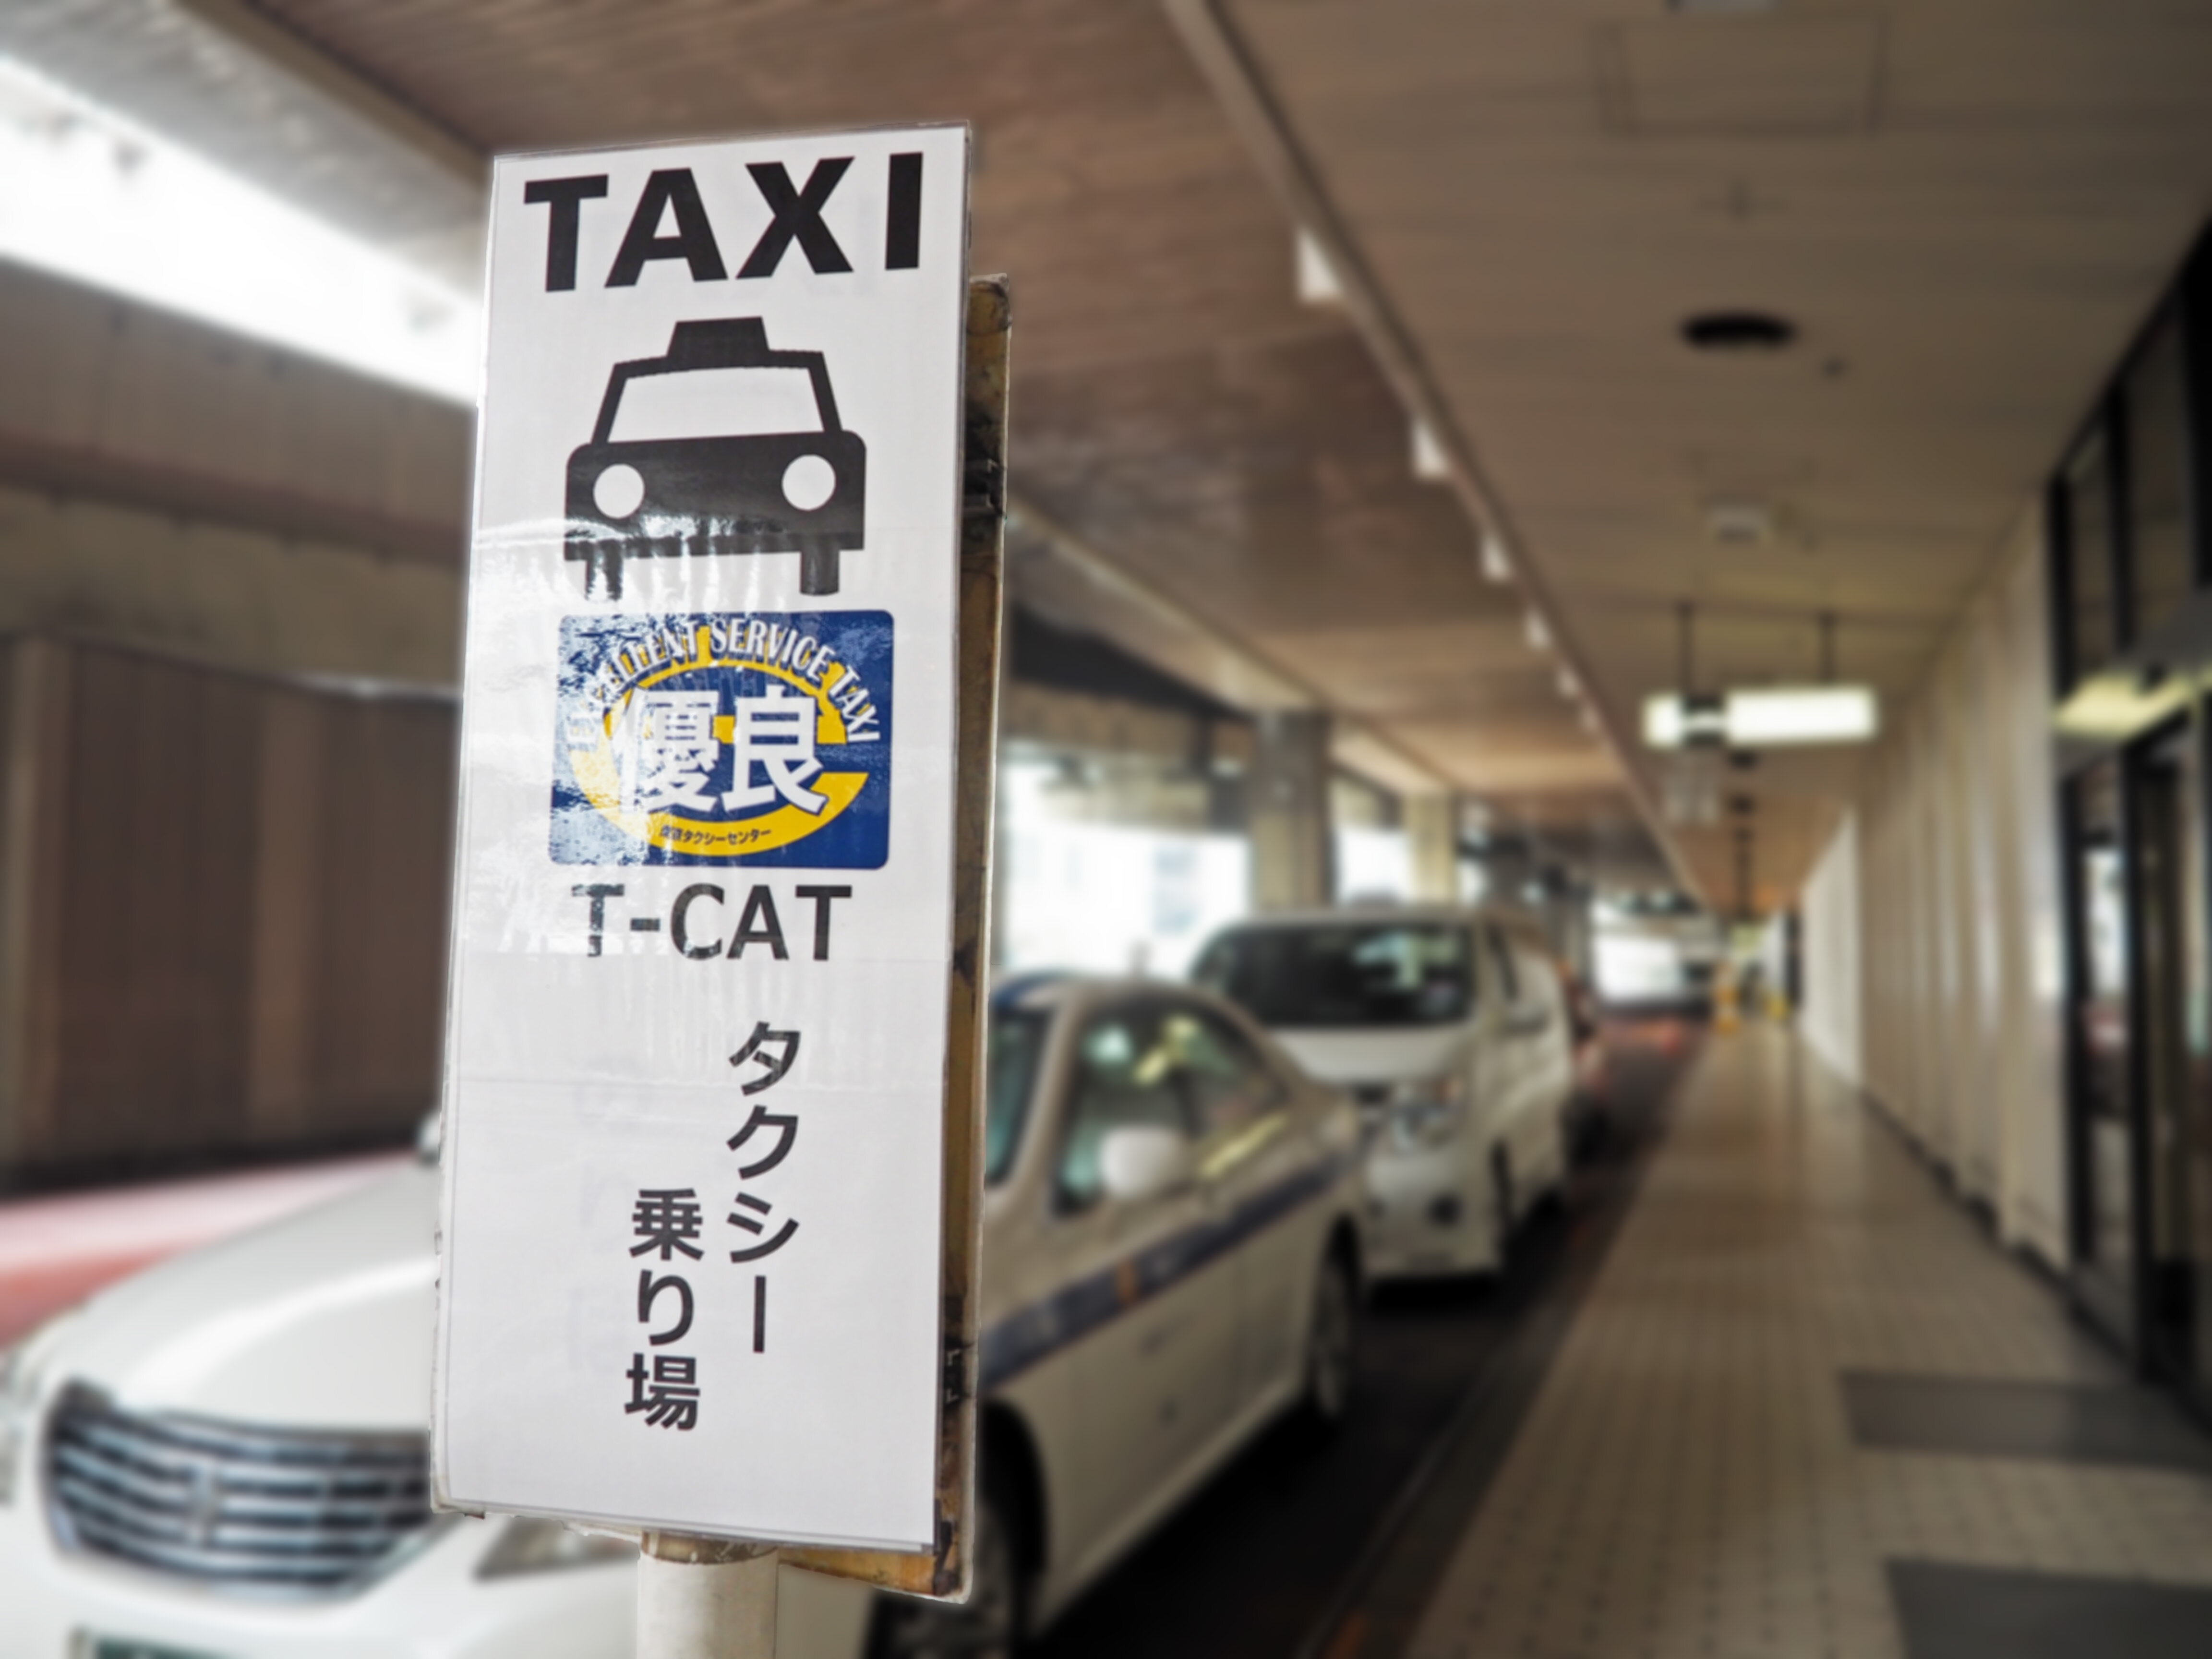 空港 タクシー 乗り場 羽田 タクシーの定額タクシーに関するよくある質問